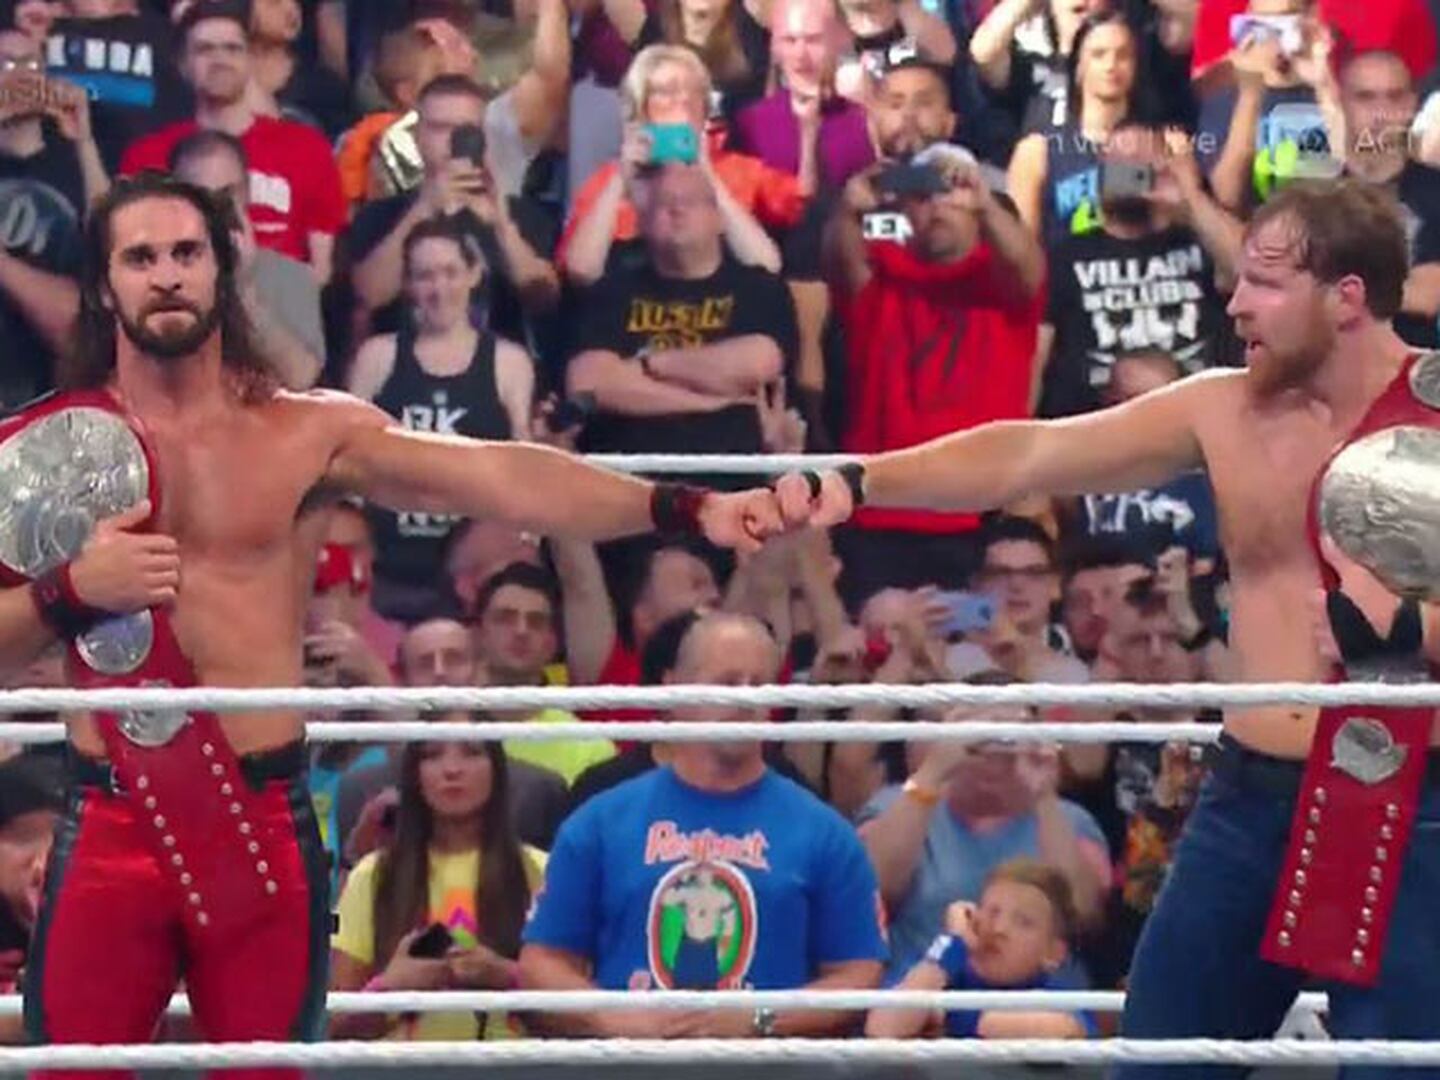 Inicia una nueva era entre Seth Rollins y Dean Ambrose como campeones